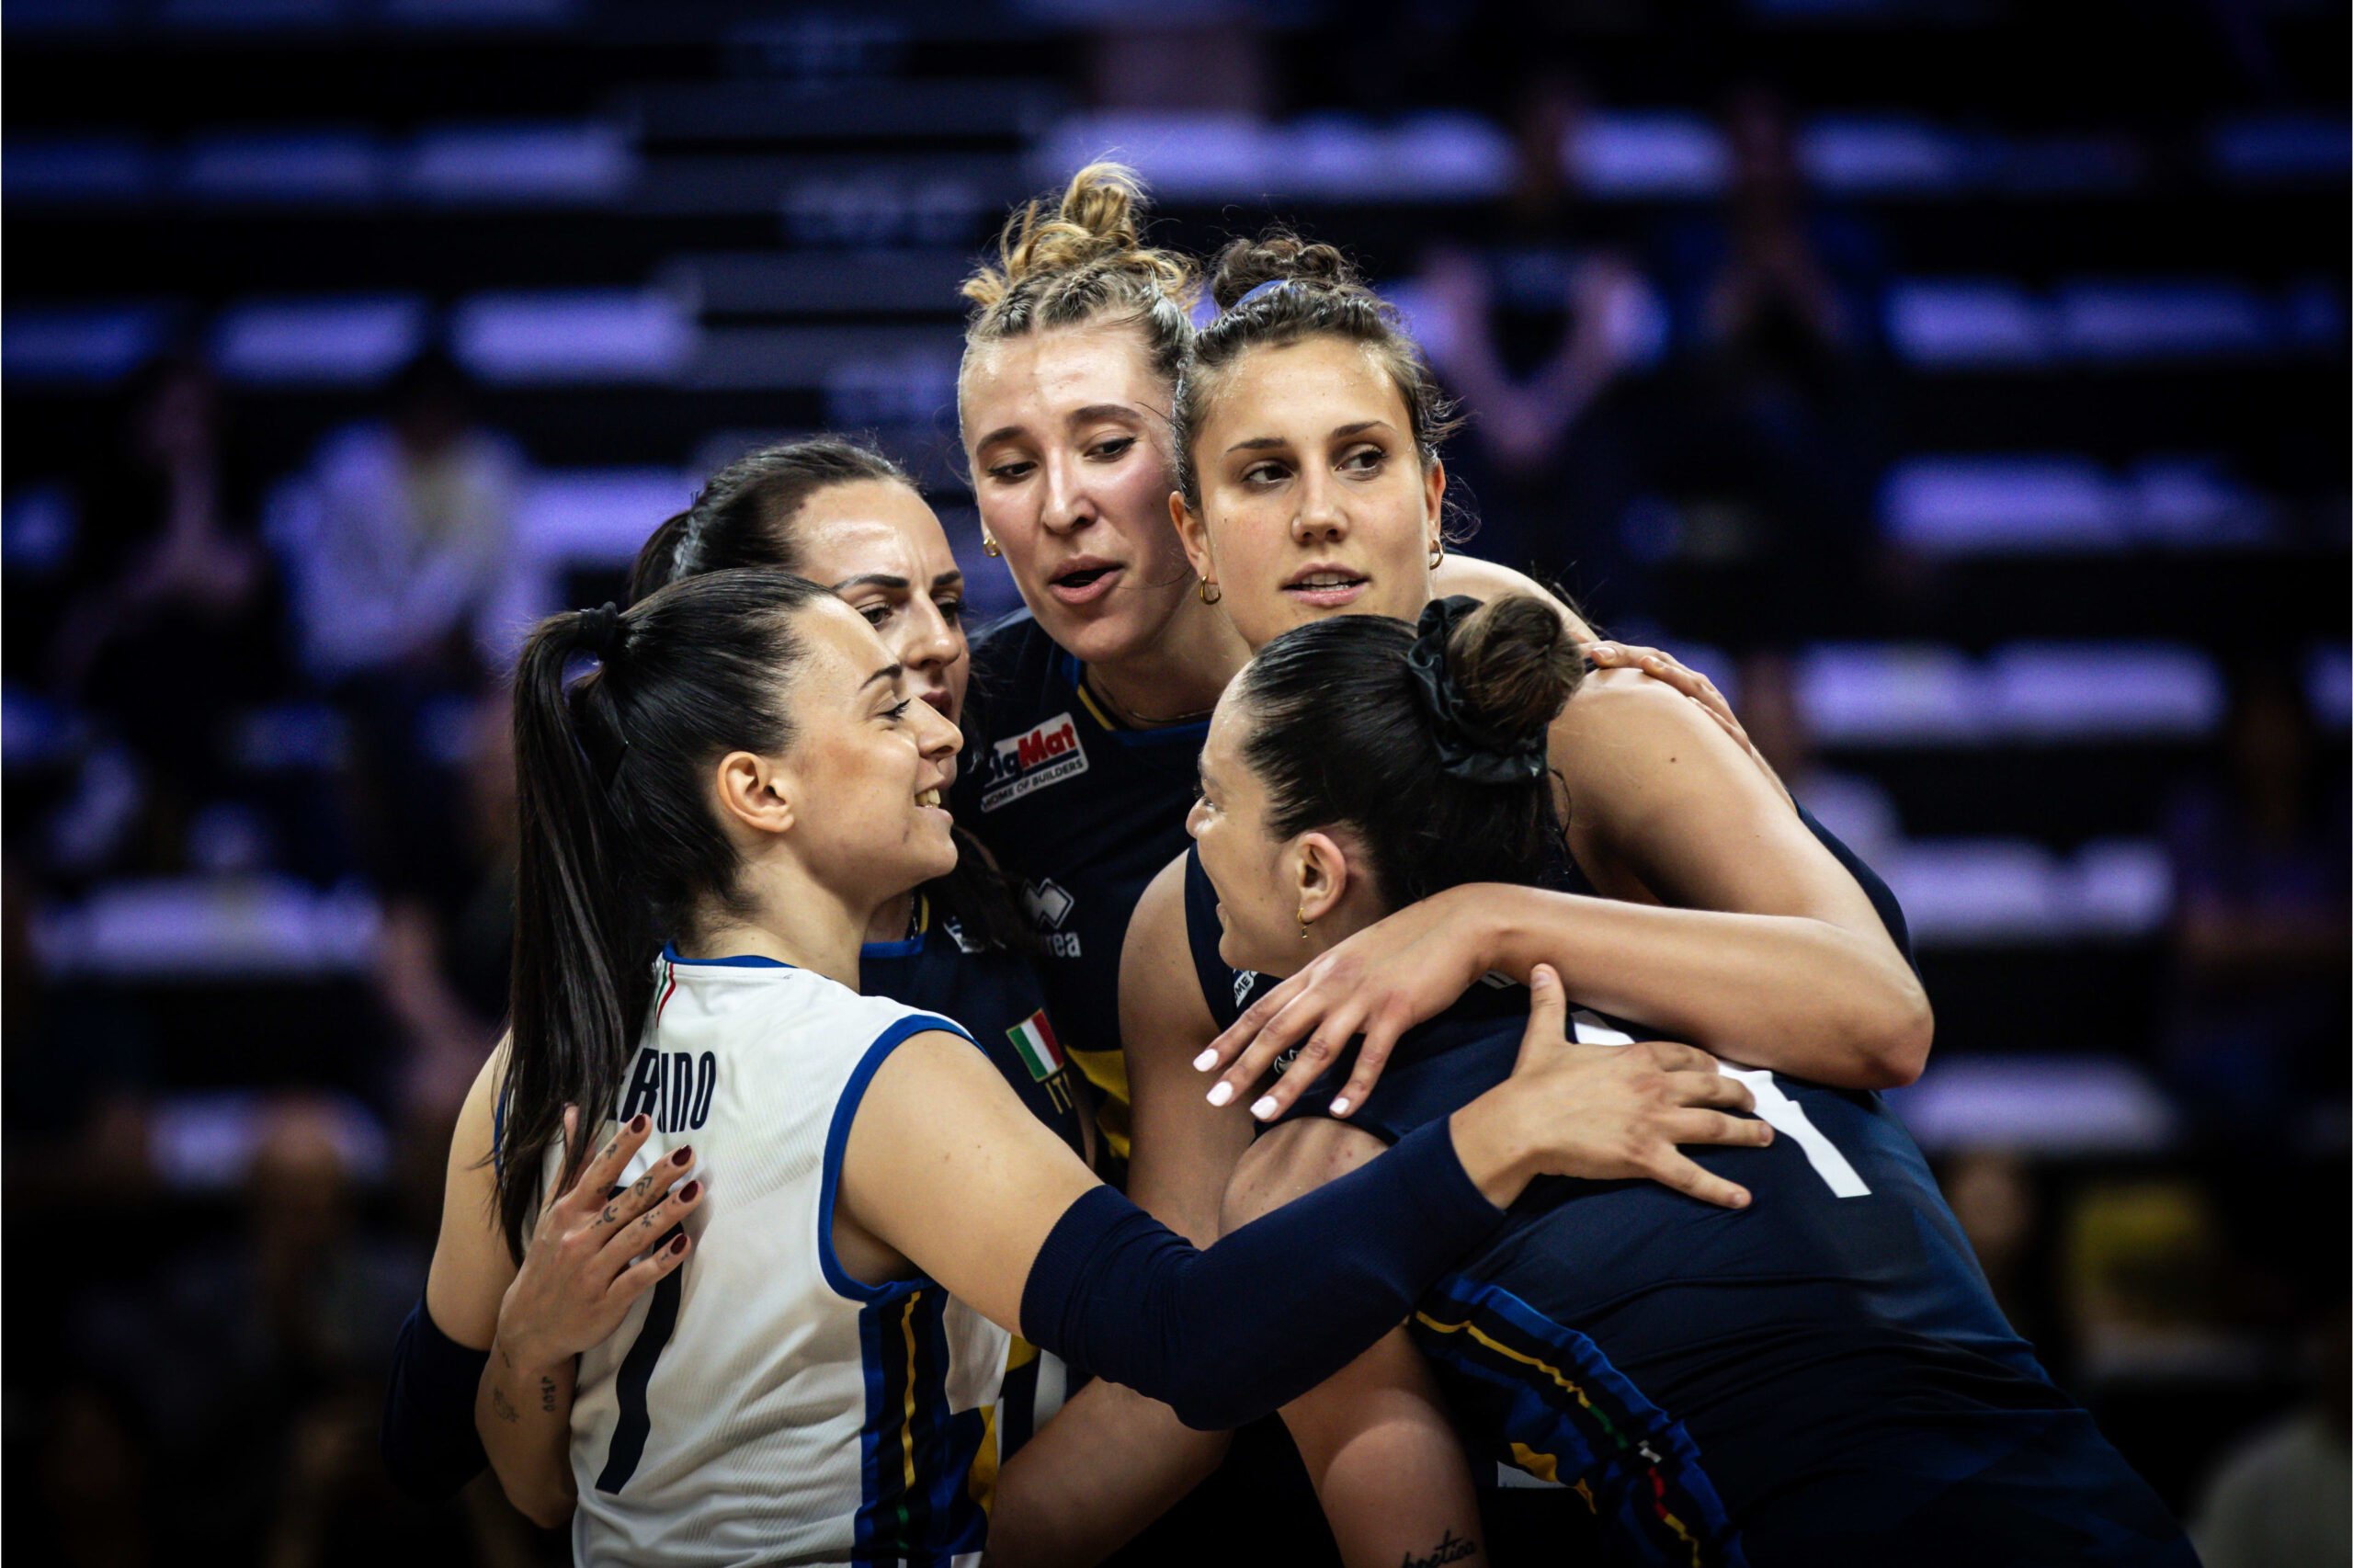 LIVE Italia Turchia, Nations League volley femminile in DIRETTA: sfida a Vargas e Karakurt nella tana del lupo!